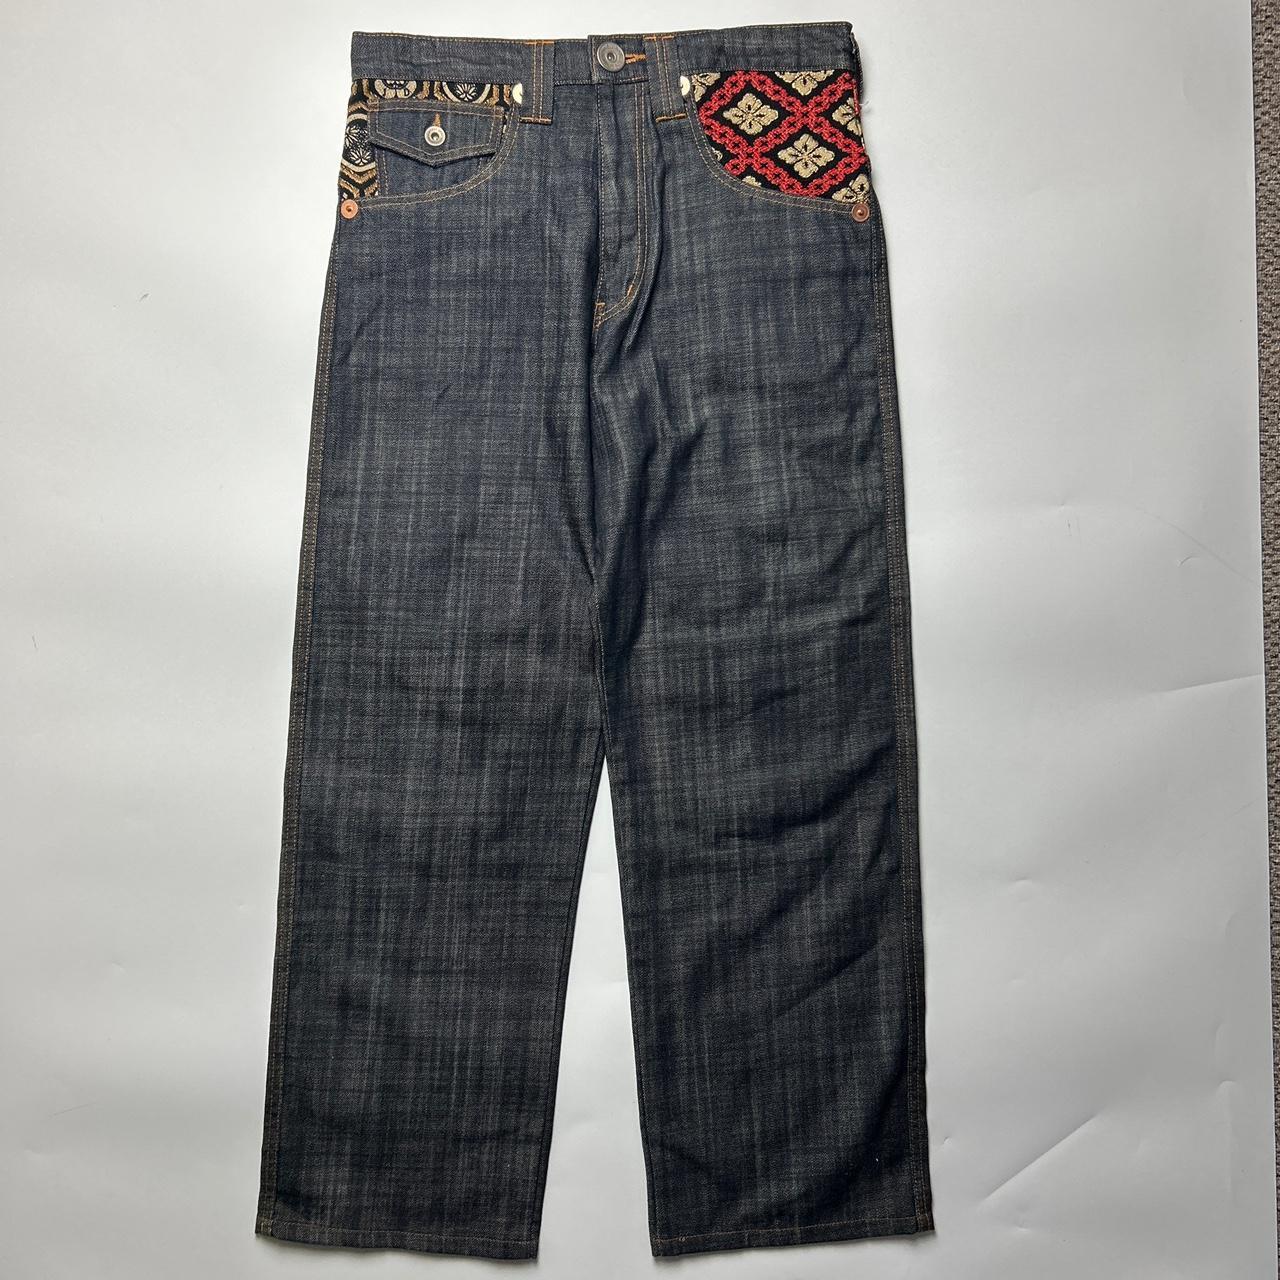 Juvenile Deliquant Jeans  (34")